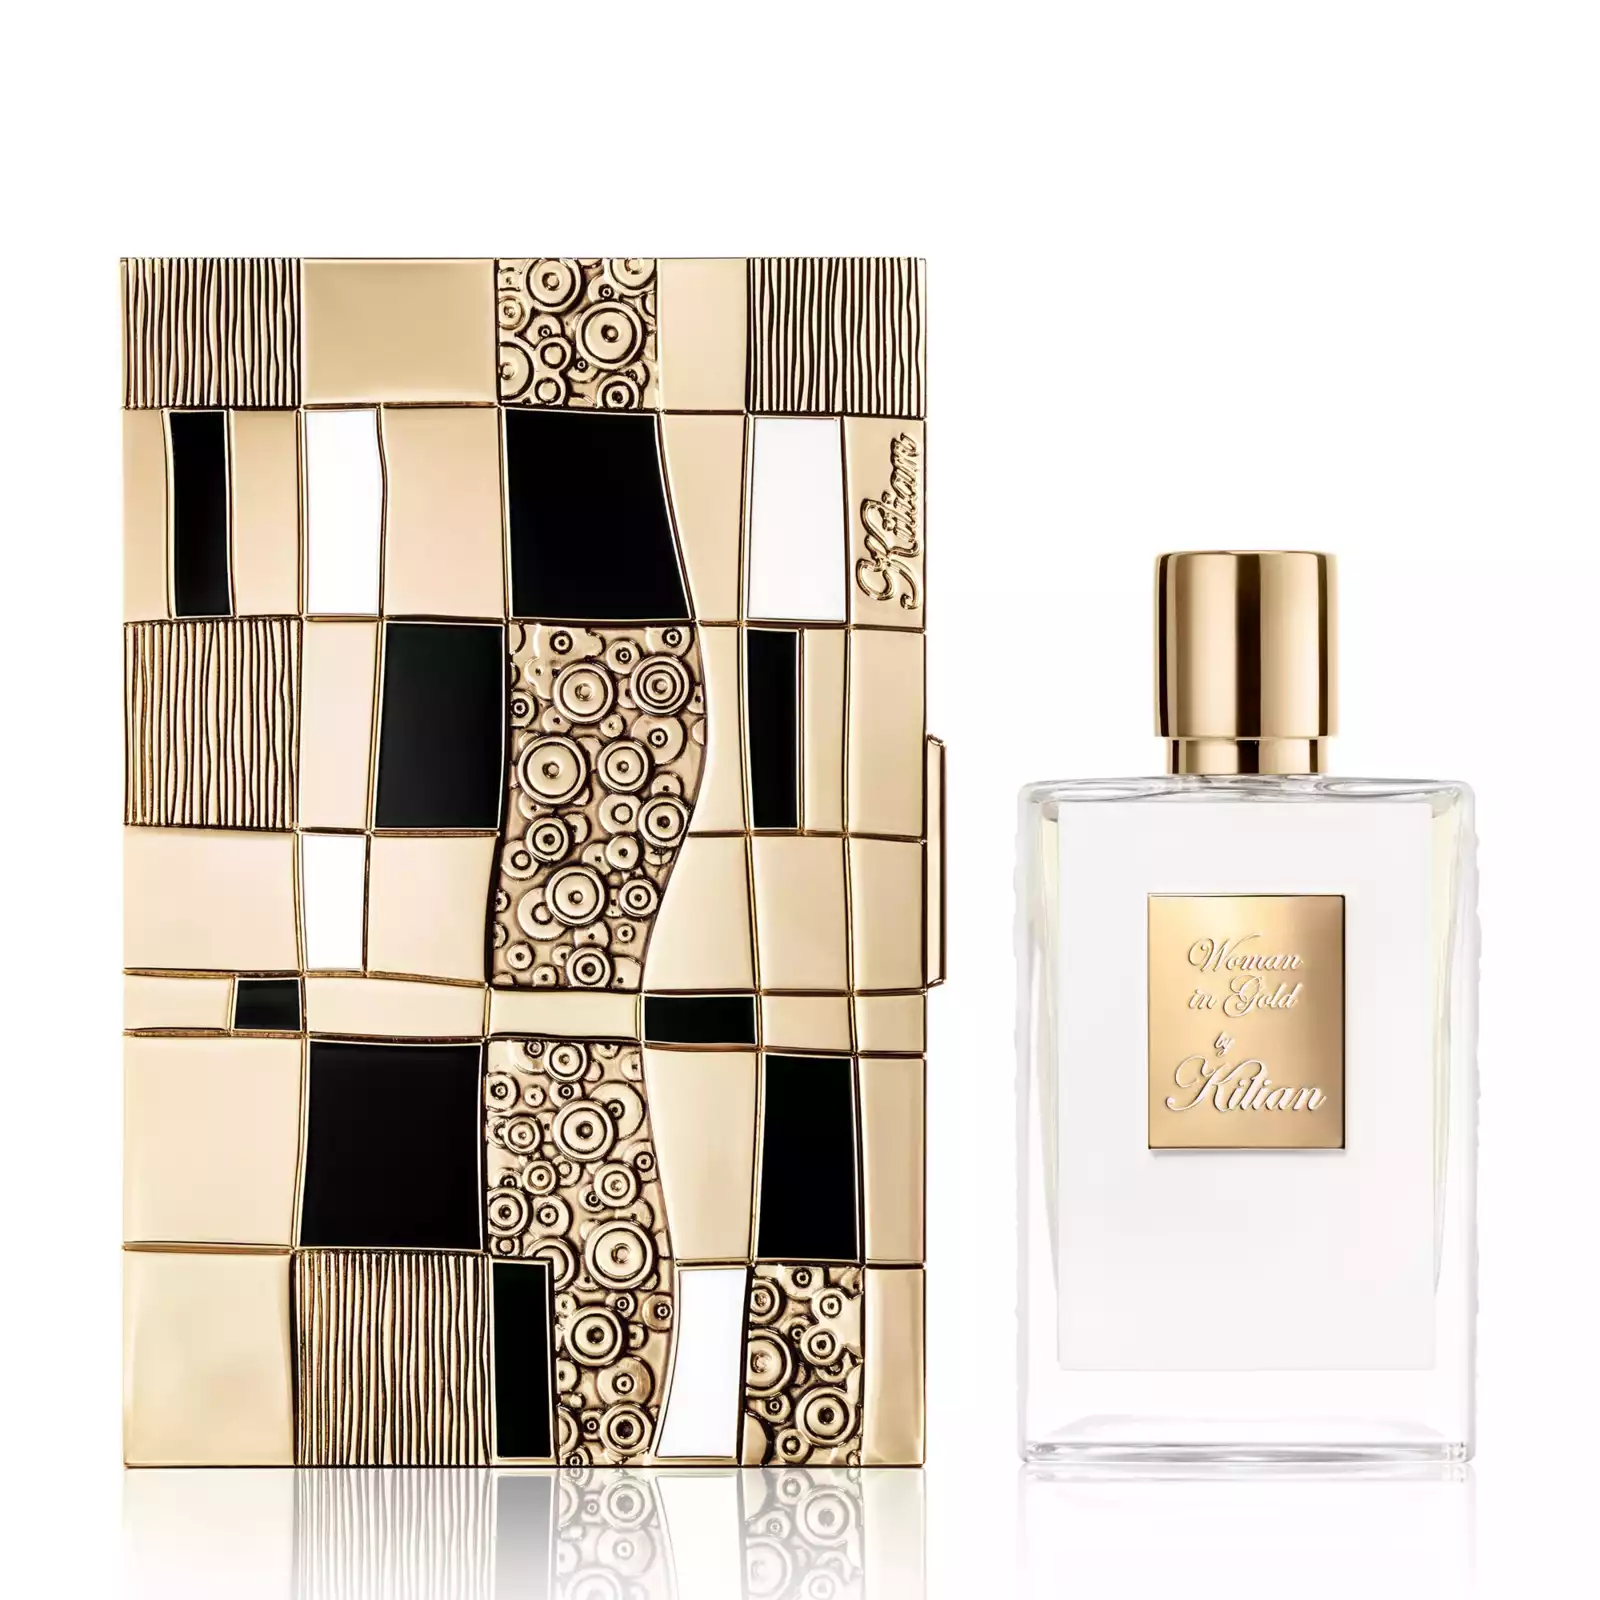 – Woman in Gold Eau de Parfum